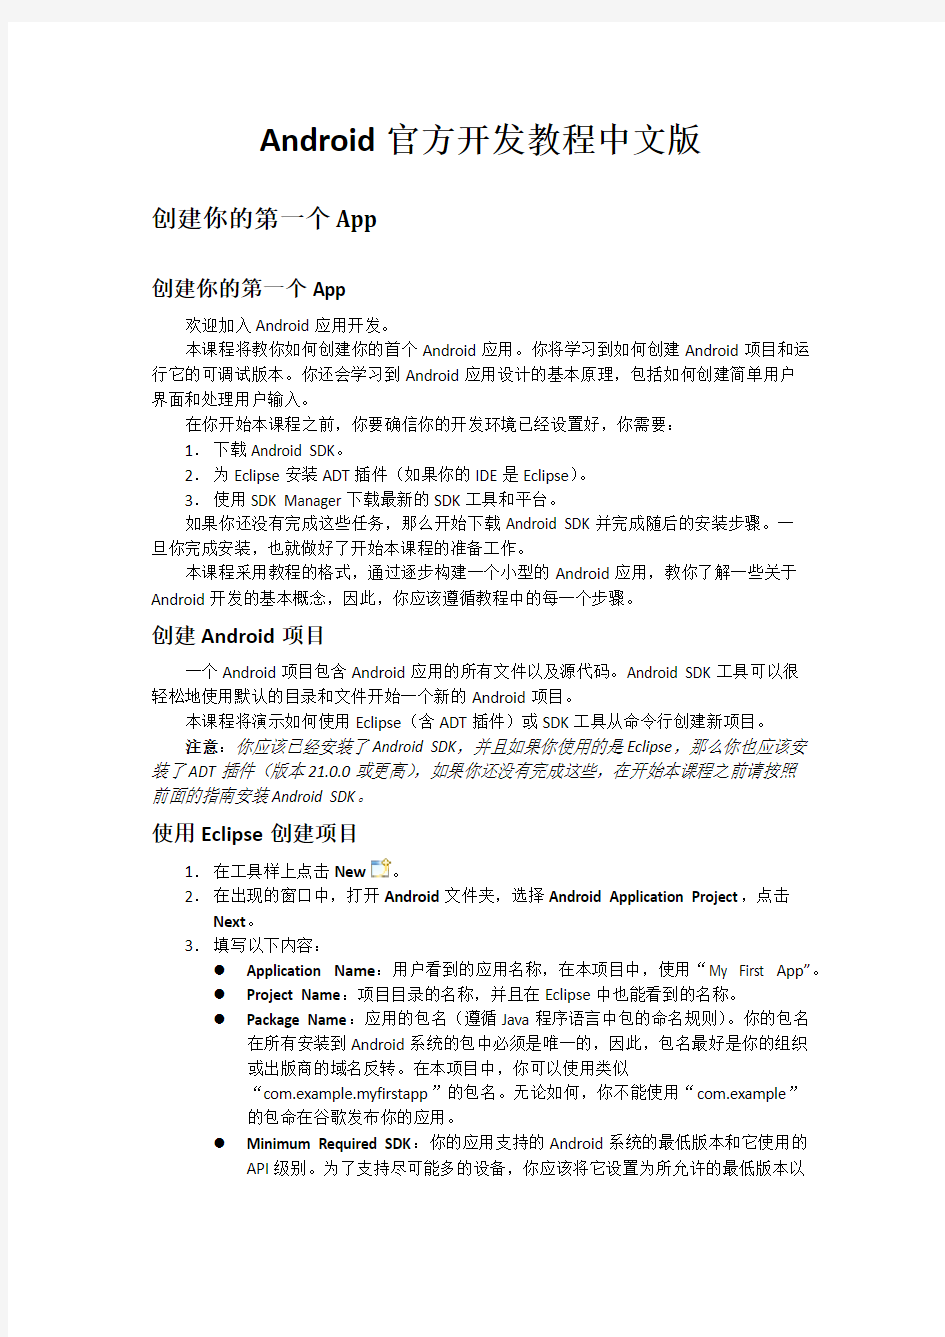 Android官方开发教程中文版